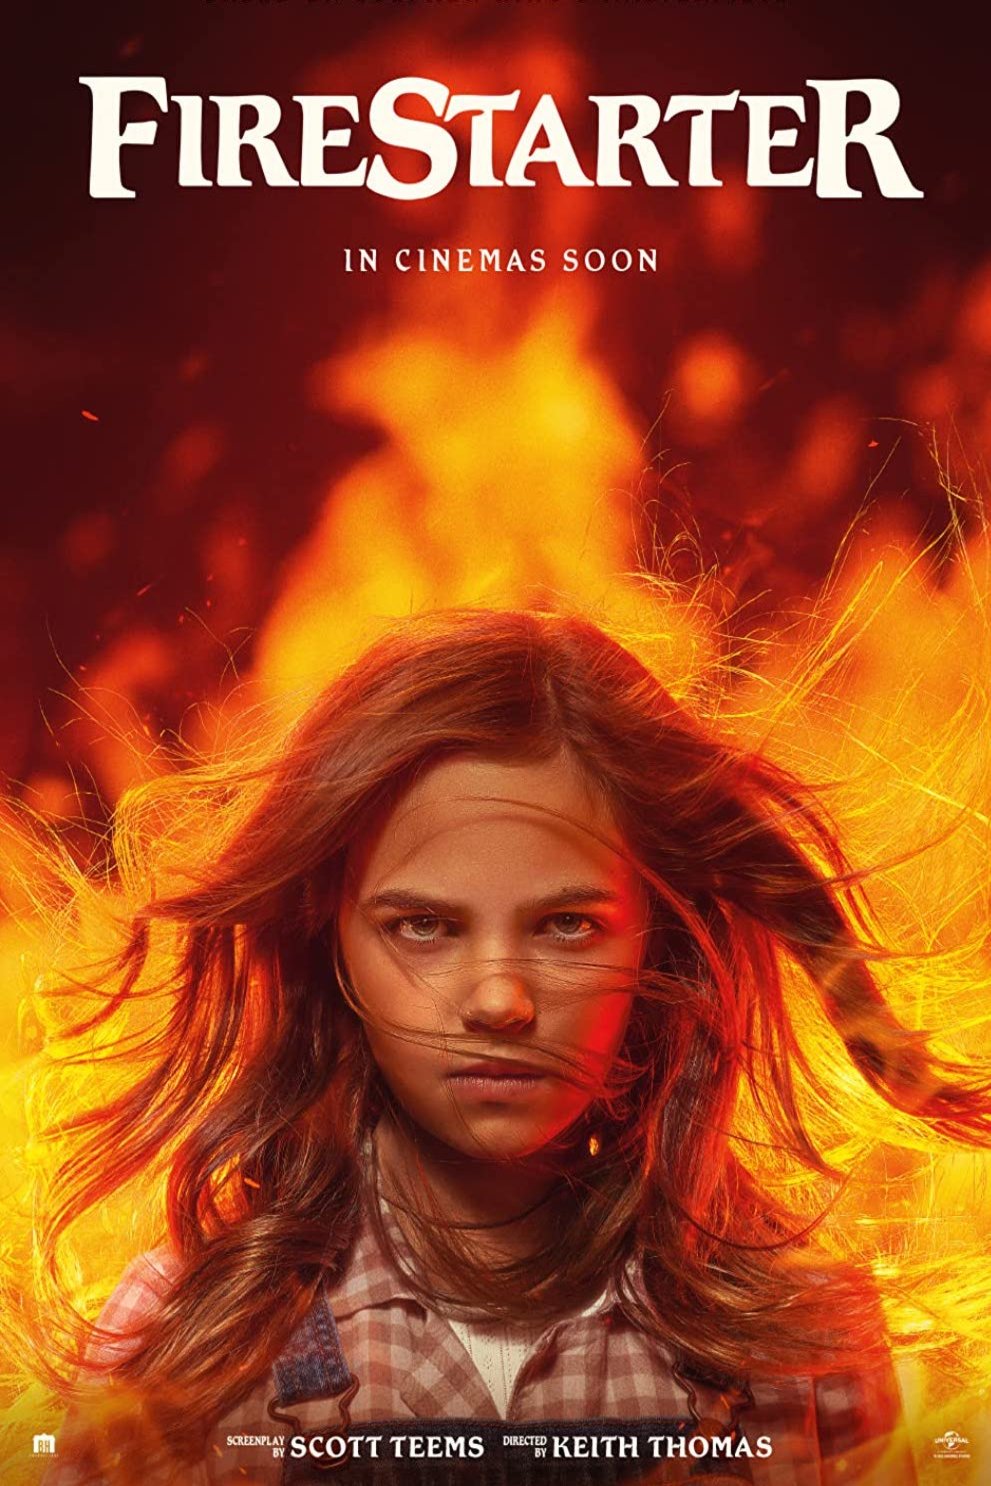 Poster of the movie Firestarter